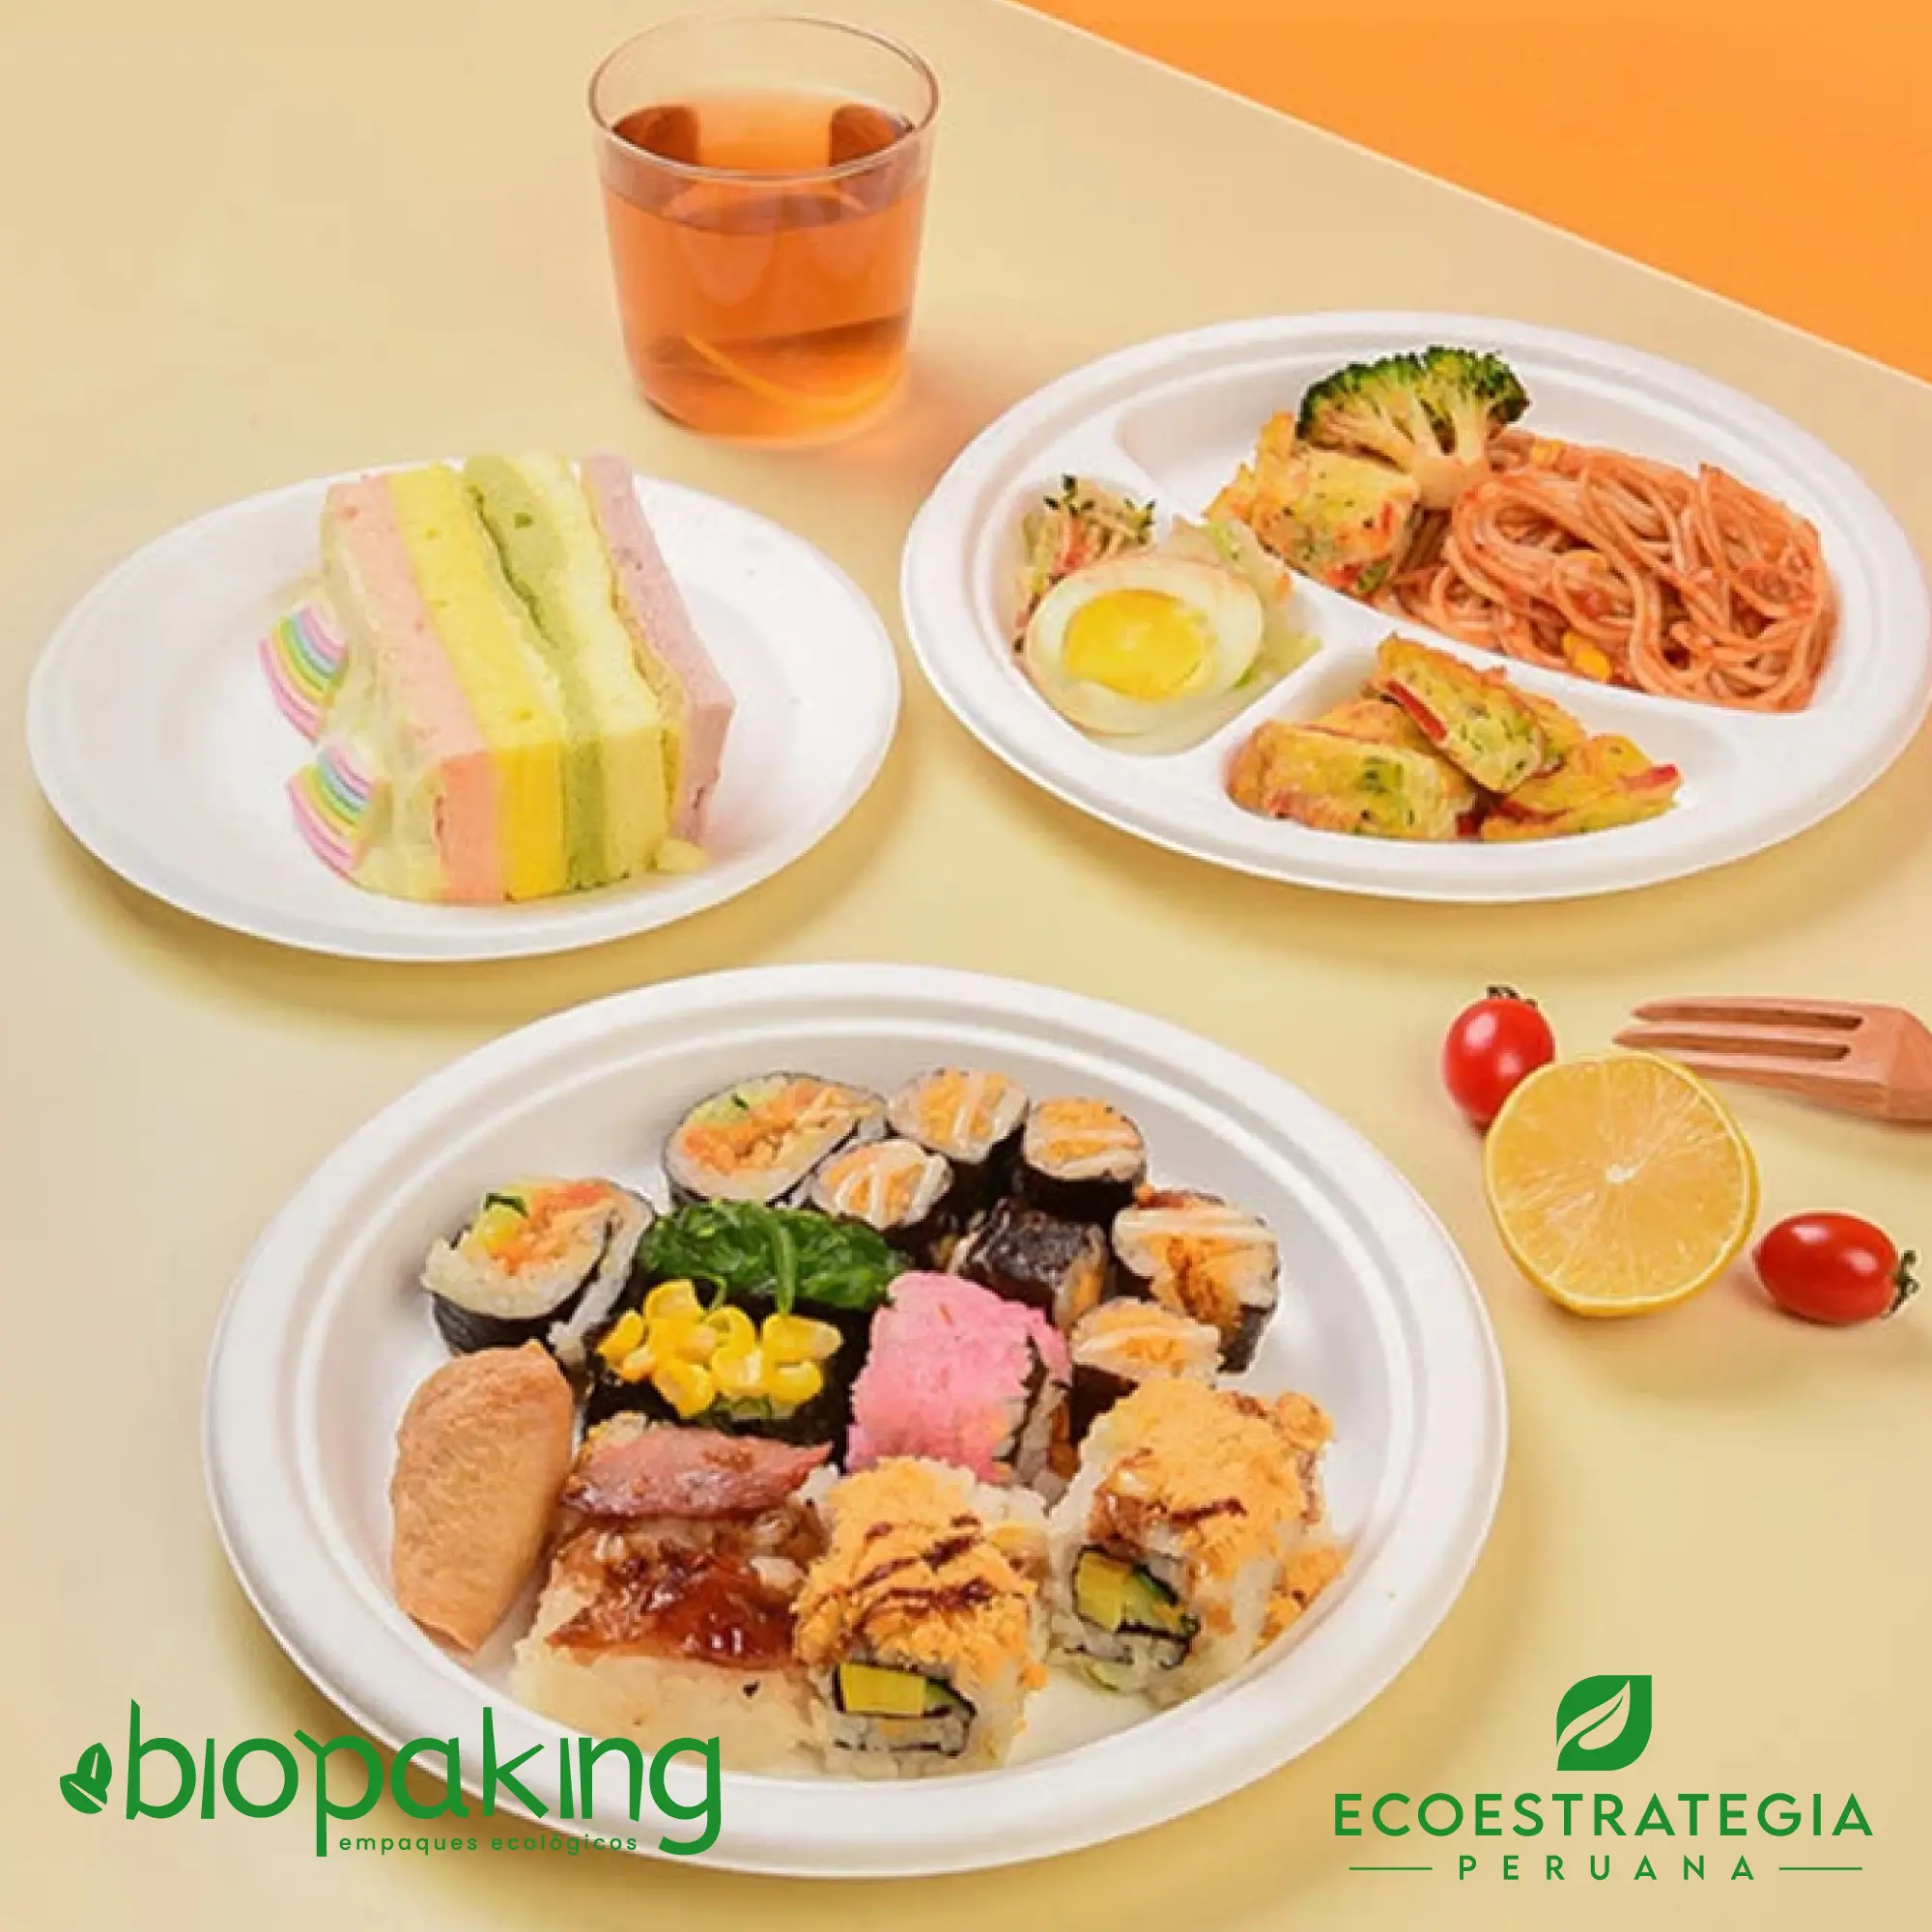 Es un plato biodegradable de 26 cm, fabricado a base de fibra de caña de azúcar. Apto para entradas, postres, tortas, hamburguesa y más. Contamos con stock de platos biodegradables, también los encuentras en las medidas. La mejor calidad en descartables biodegradables.